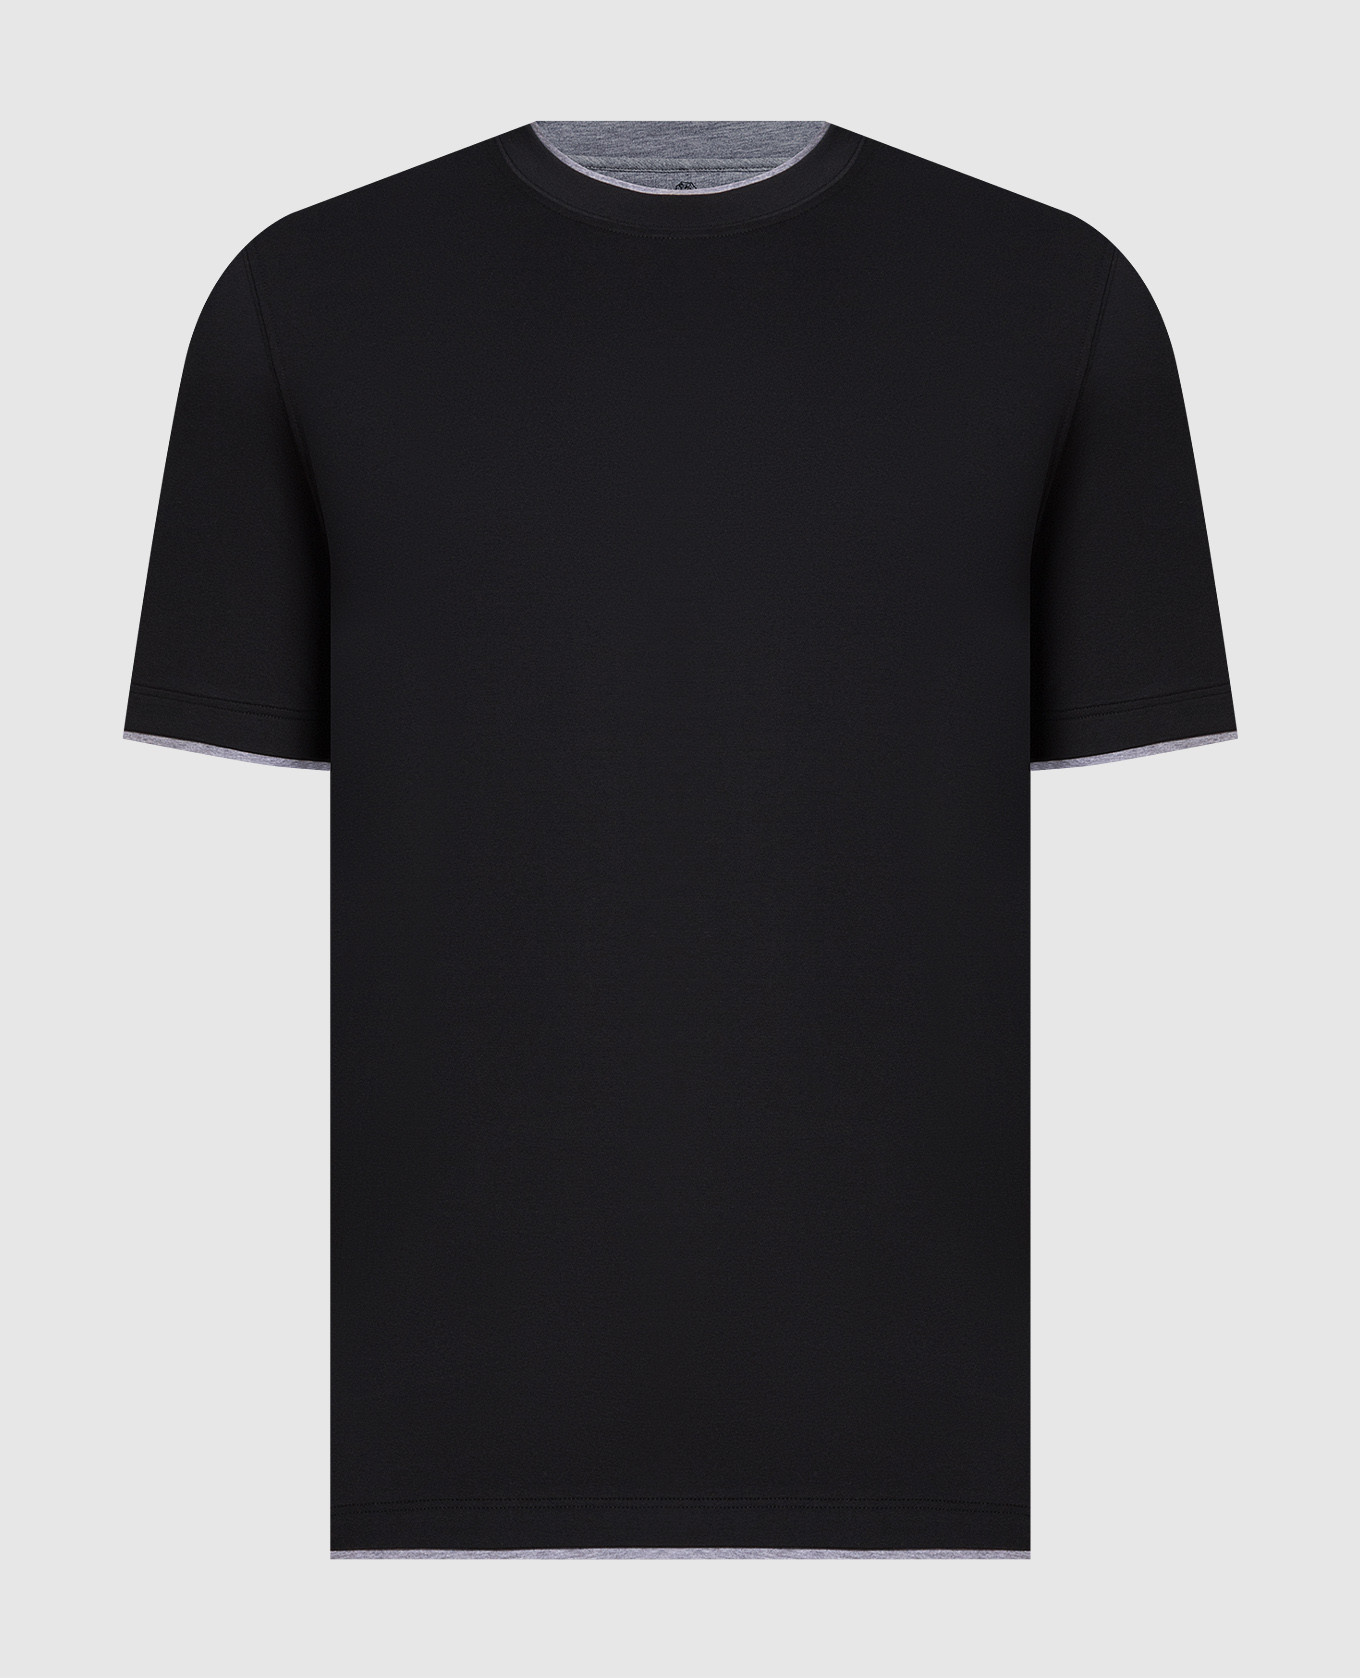 Черная футболка с эффектом наложения слоев